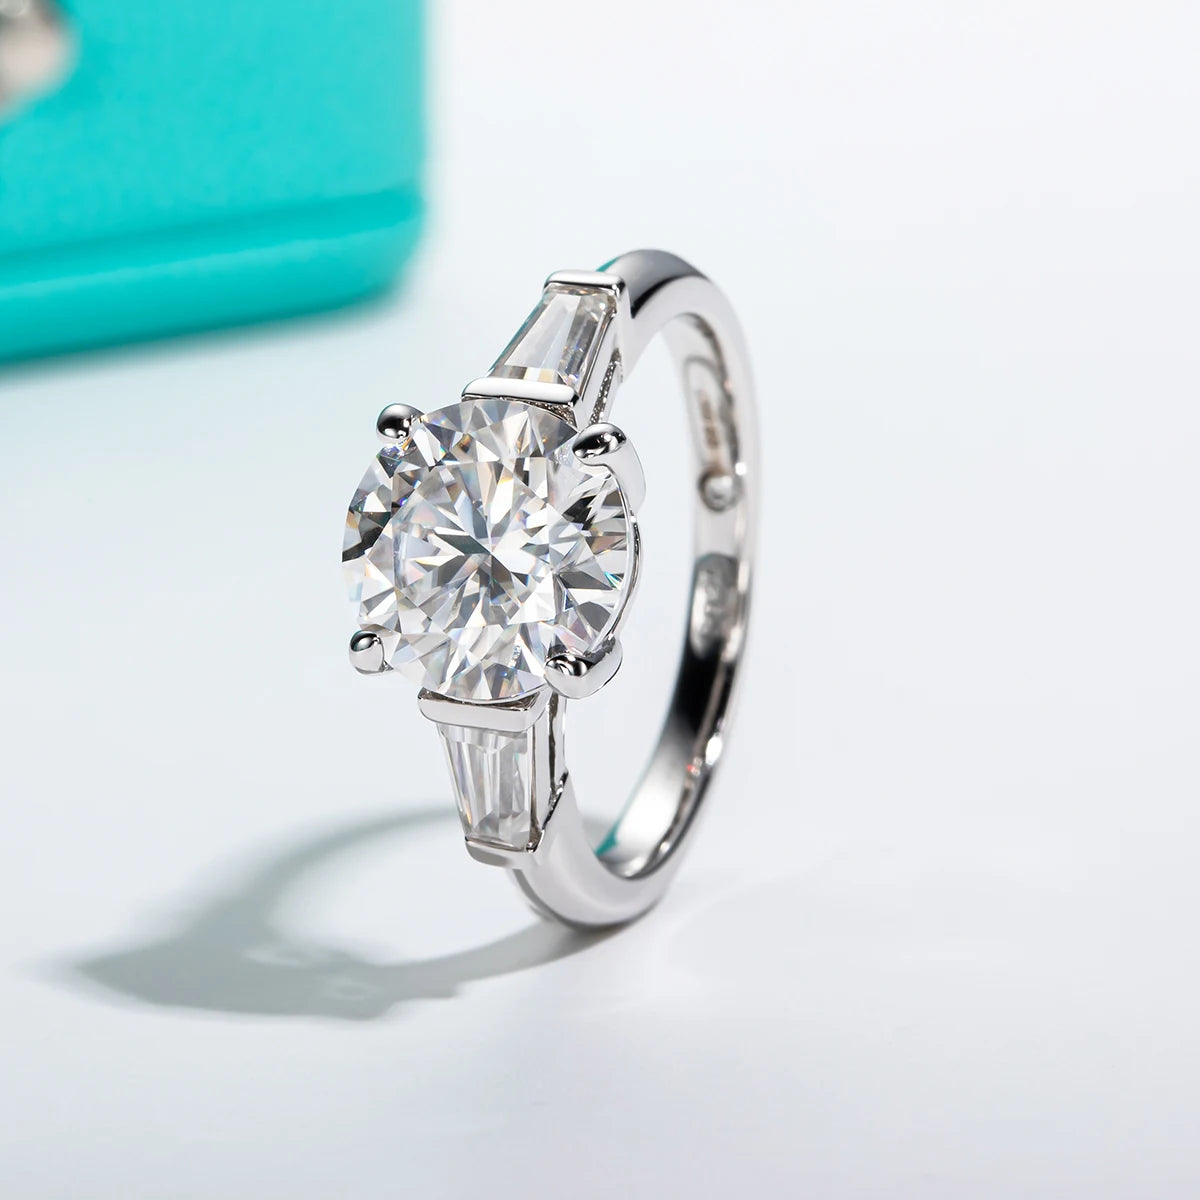 Luxury Brilliant 3.6CT VVS1/D Moissanite Ring For Women | GRA Certificate